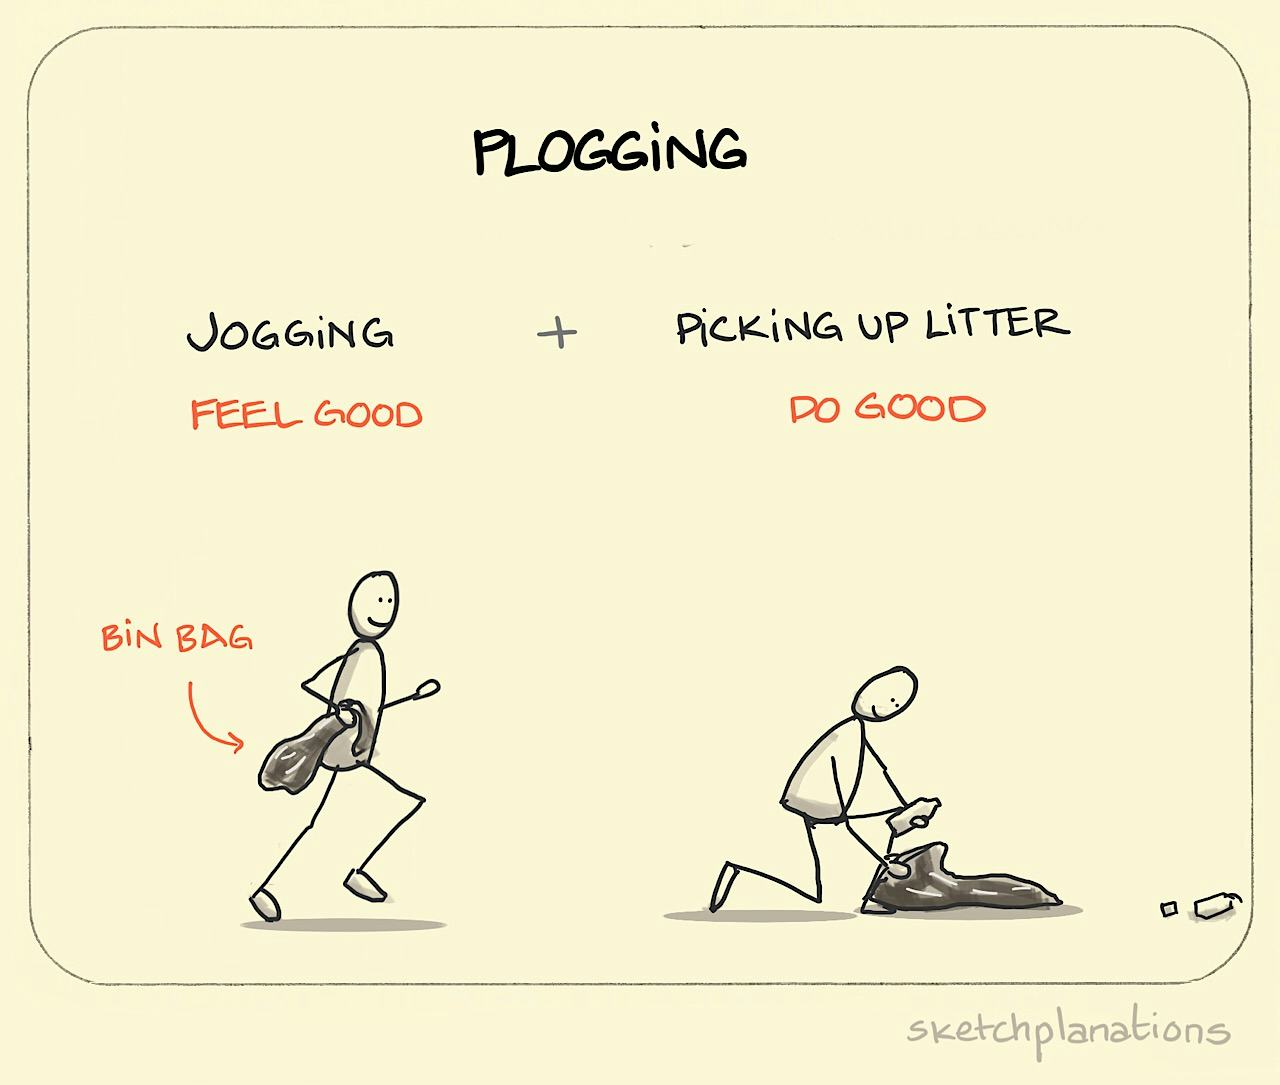 Plogging - Sketchplanations